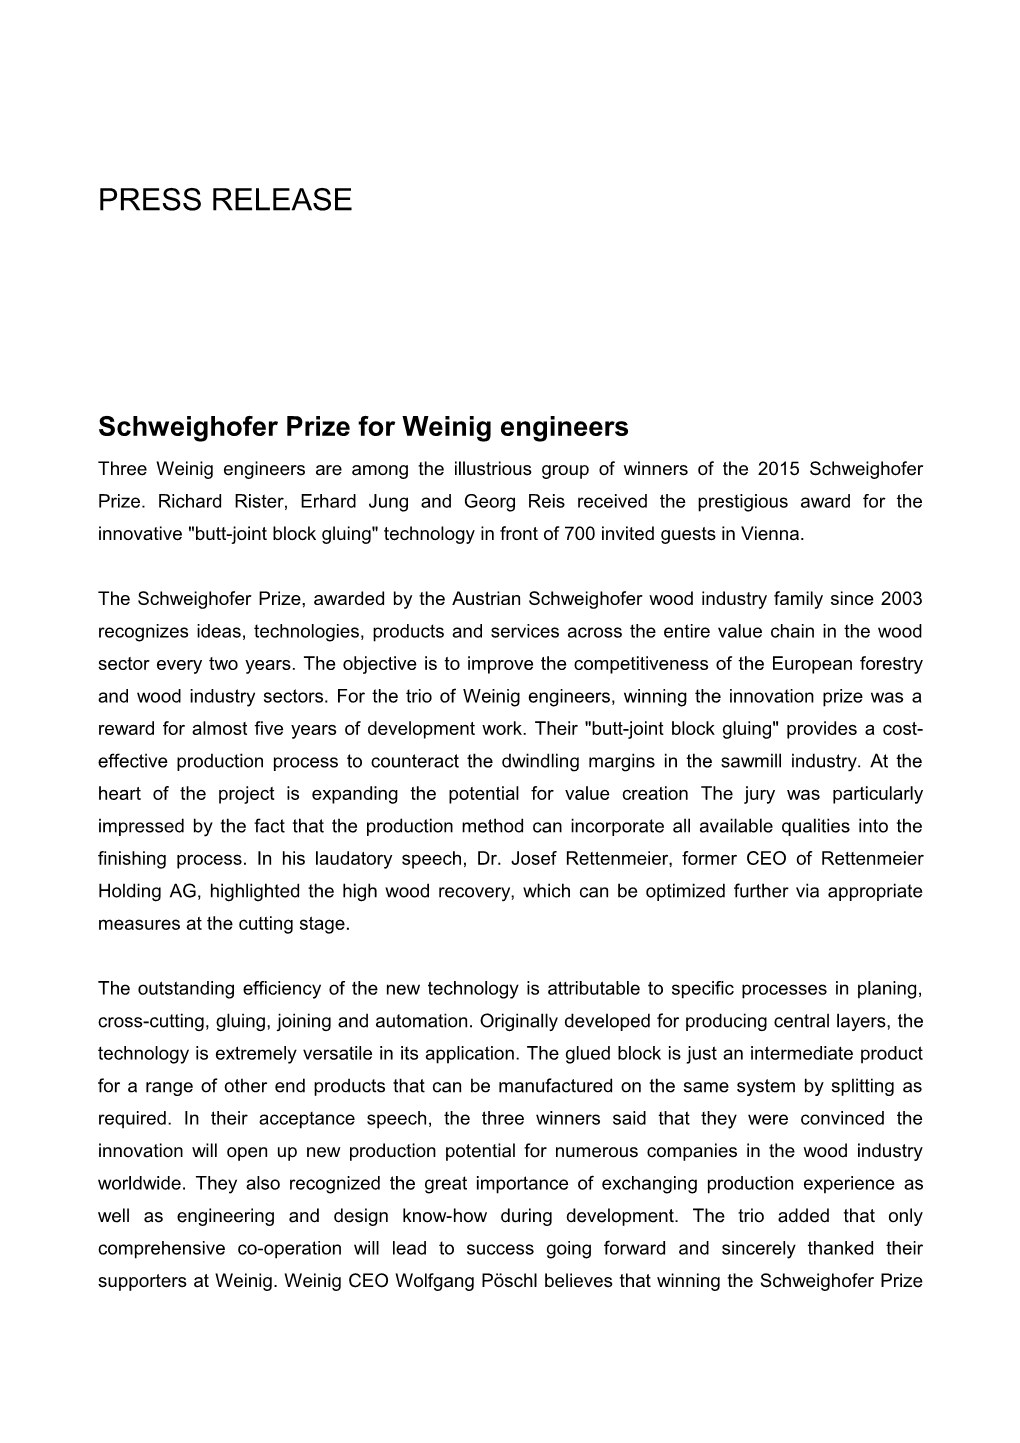 Schweighofer Prize for Weinig Engineers